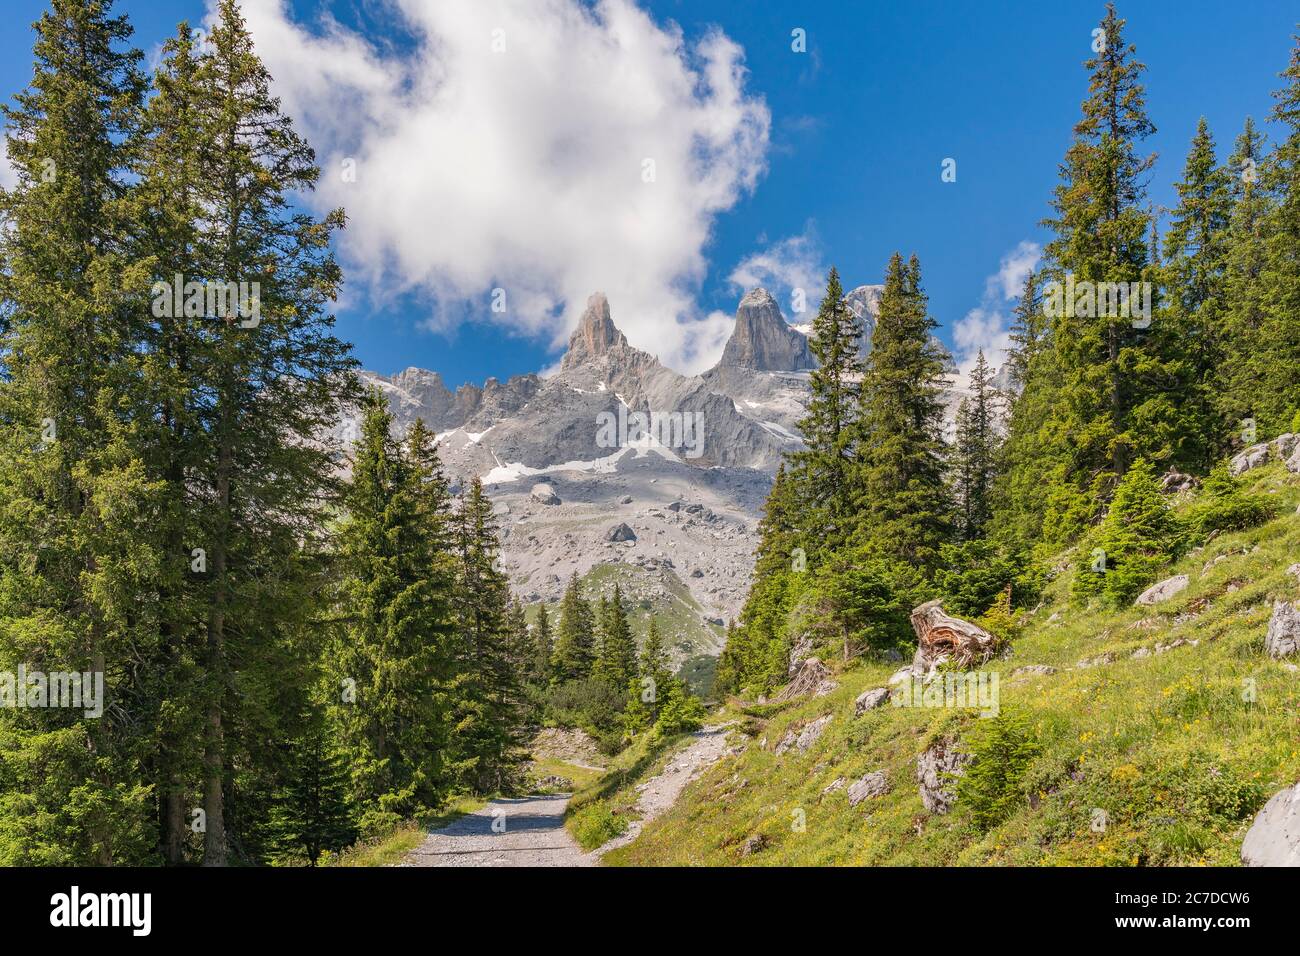 Paysage de montagnes rocheuses avec les sommets de Drusenfluh et trois tours dans la vallée du Montafon près de Tschagguns, Vorarlberg, Autriche Banque D'Images